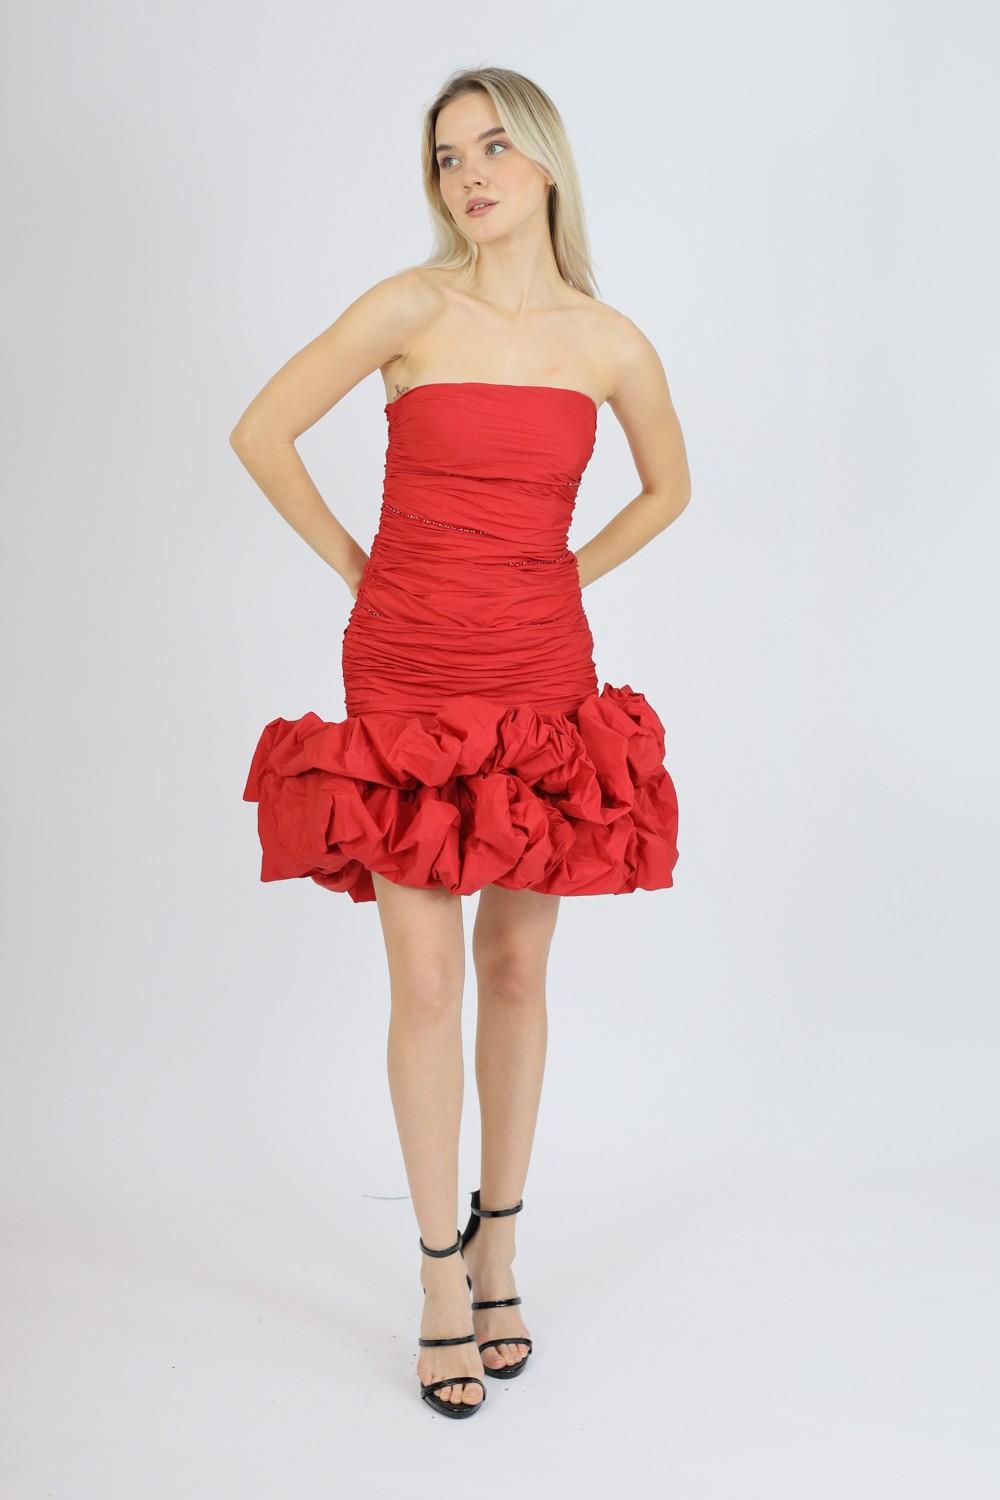 Short Evening Dress with Ruffled Skirt